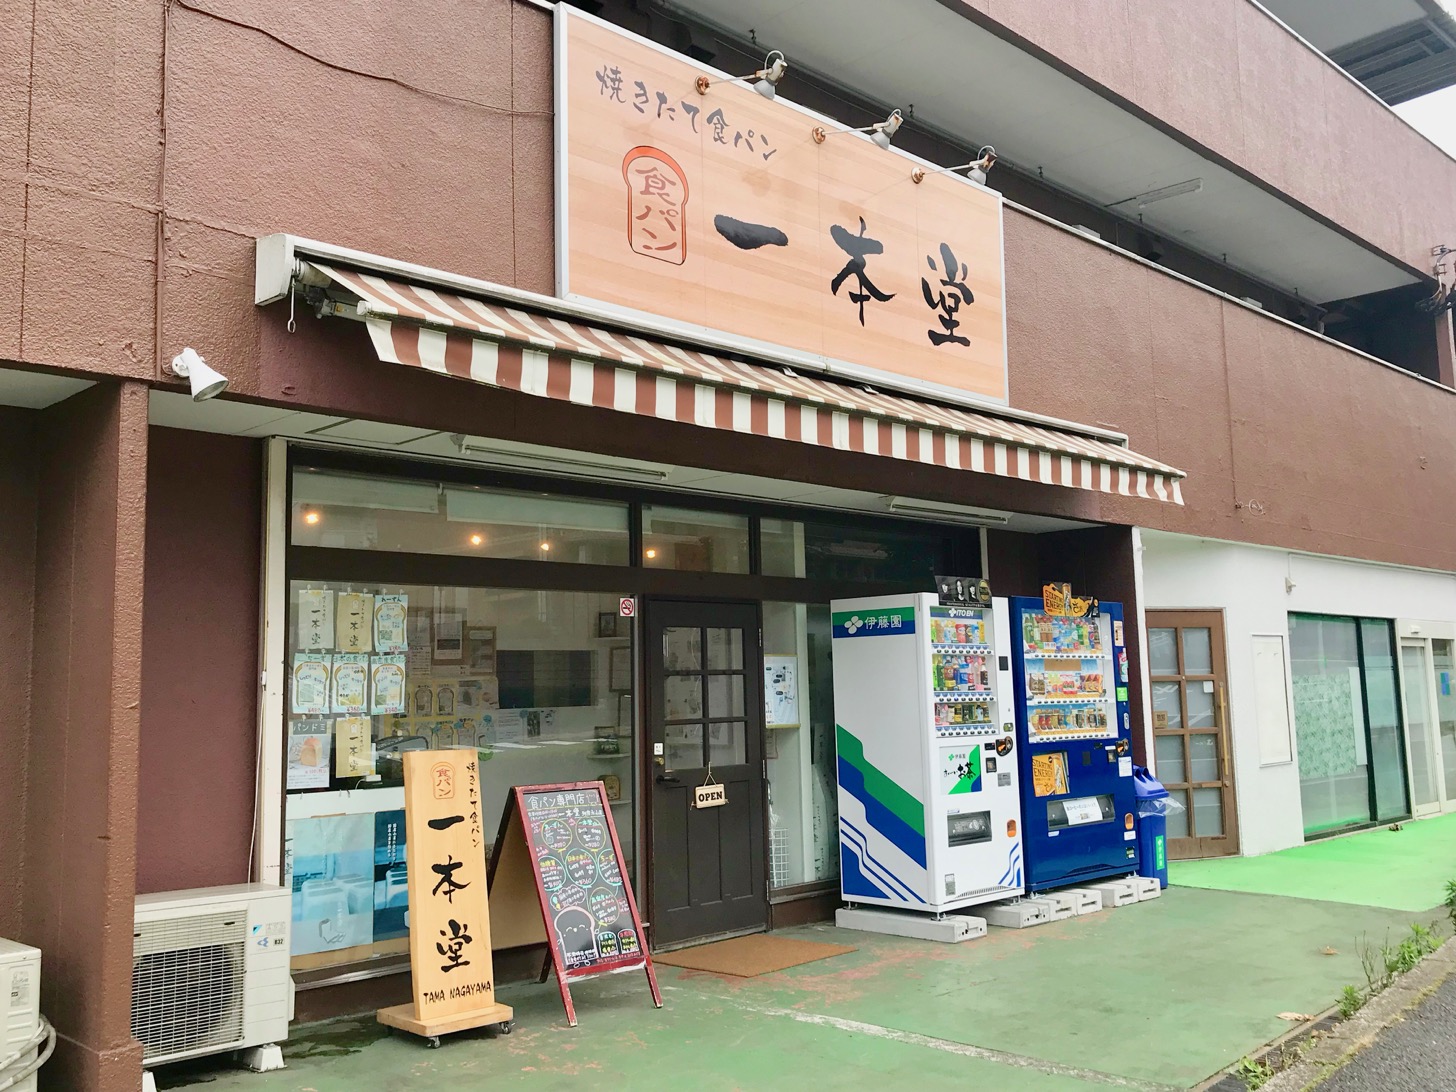 一本堂 多摩永山店 で人気の焼きたて食パンを買ってみた 多摩ポン